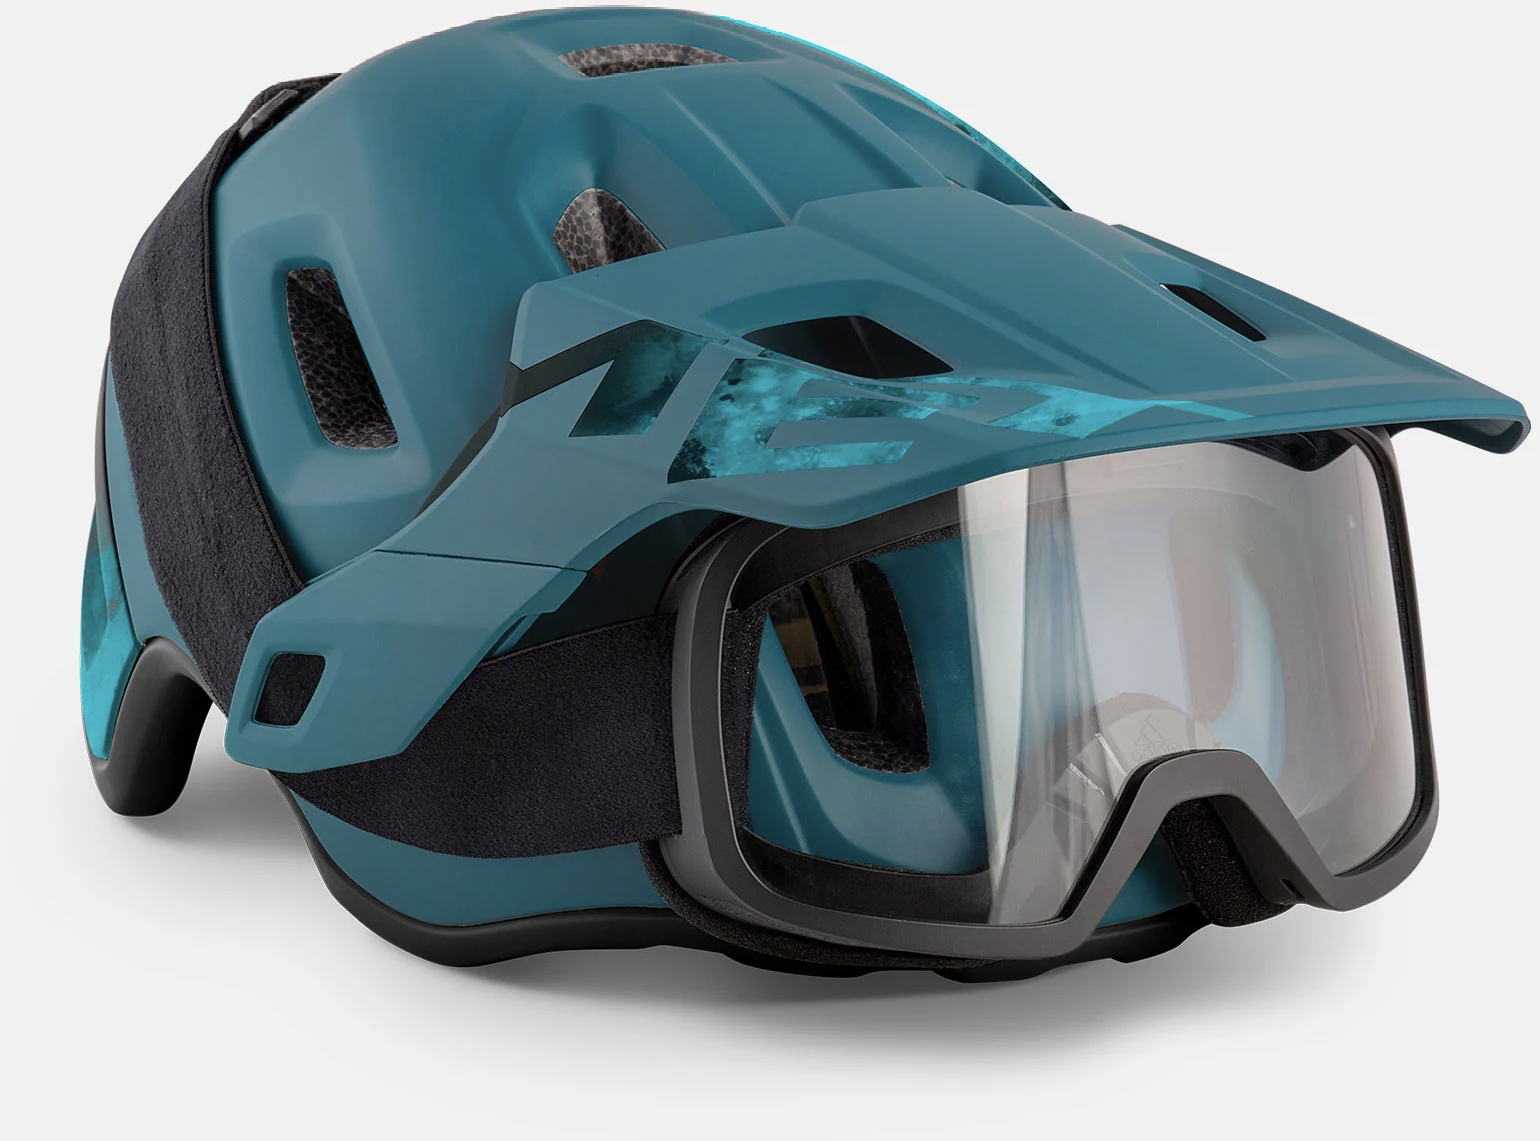 Beklædning - Cykelhjelme - MET Helmet Roam MIPS - Hvid